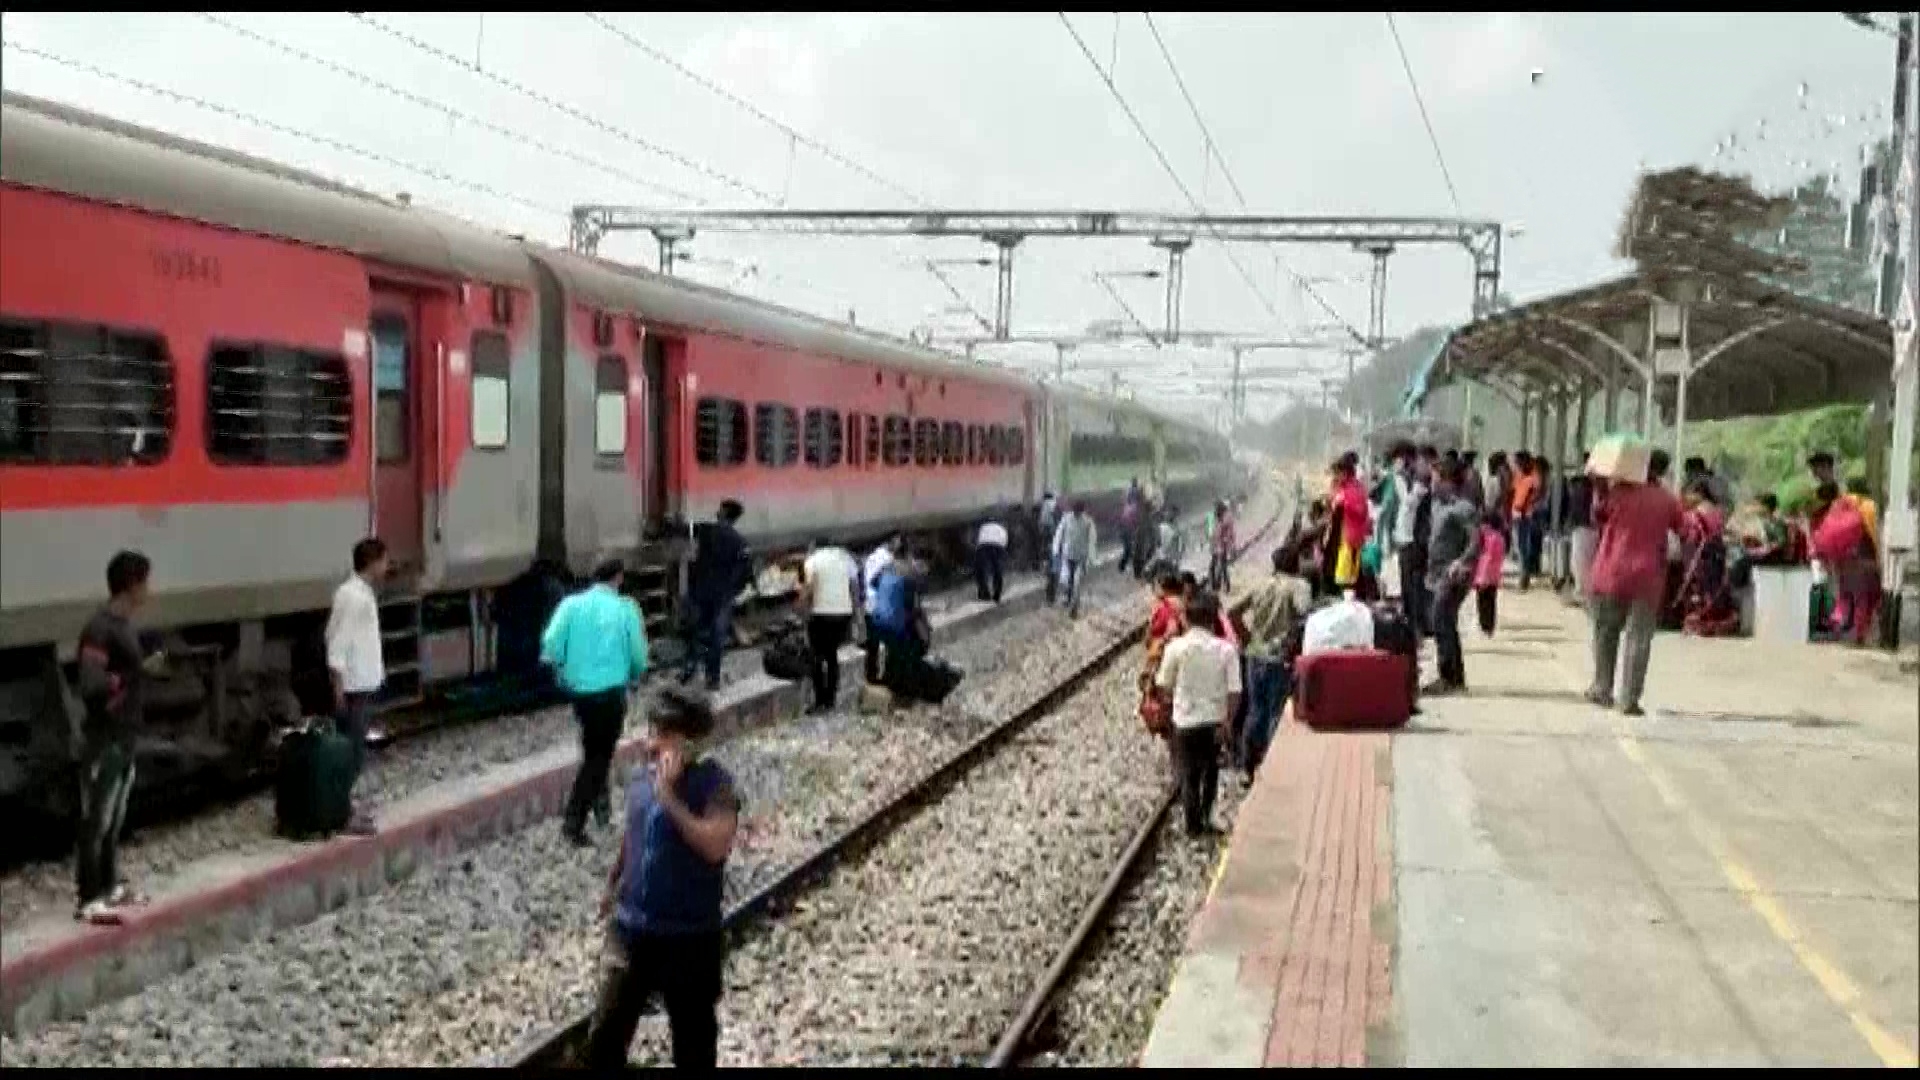 Express Train: বেঙ্গালুরু-হাওড়া এক্সপ্রেসে আগুন! কী পরিস্থিতি এই মুহূর্তে?